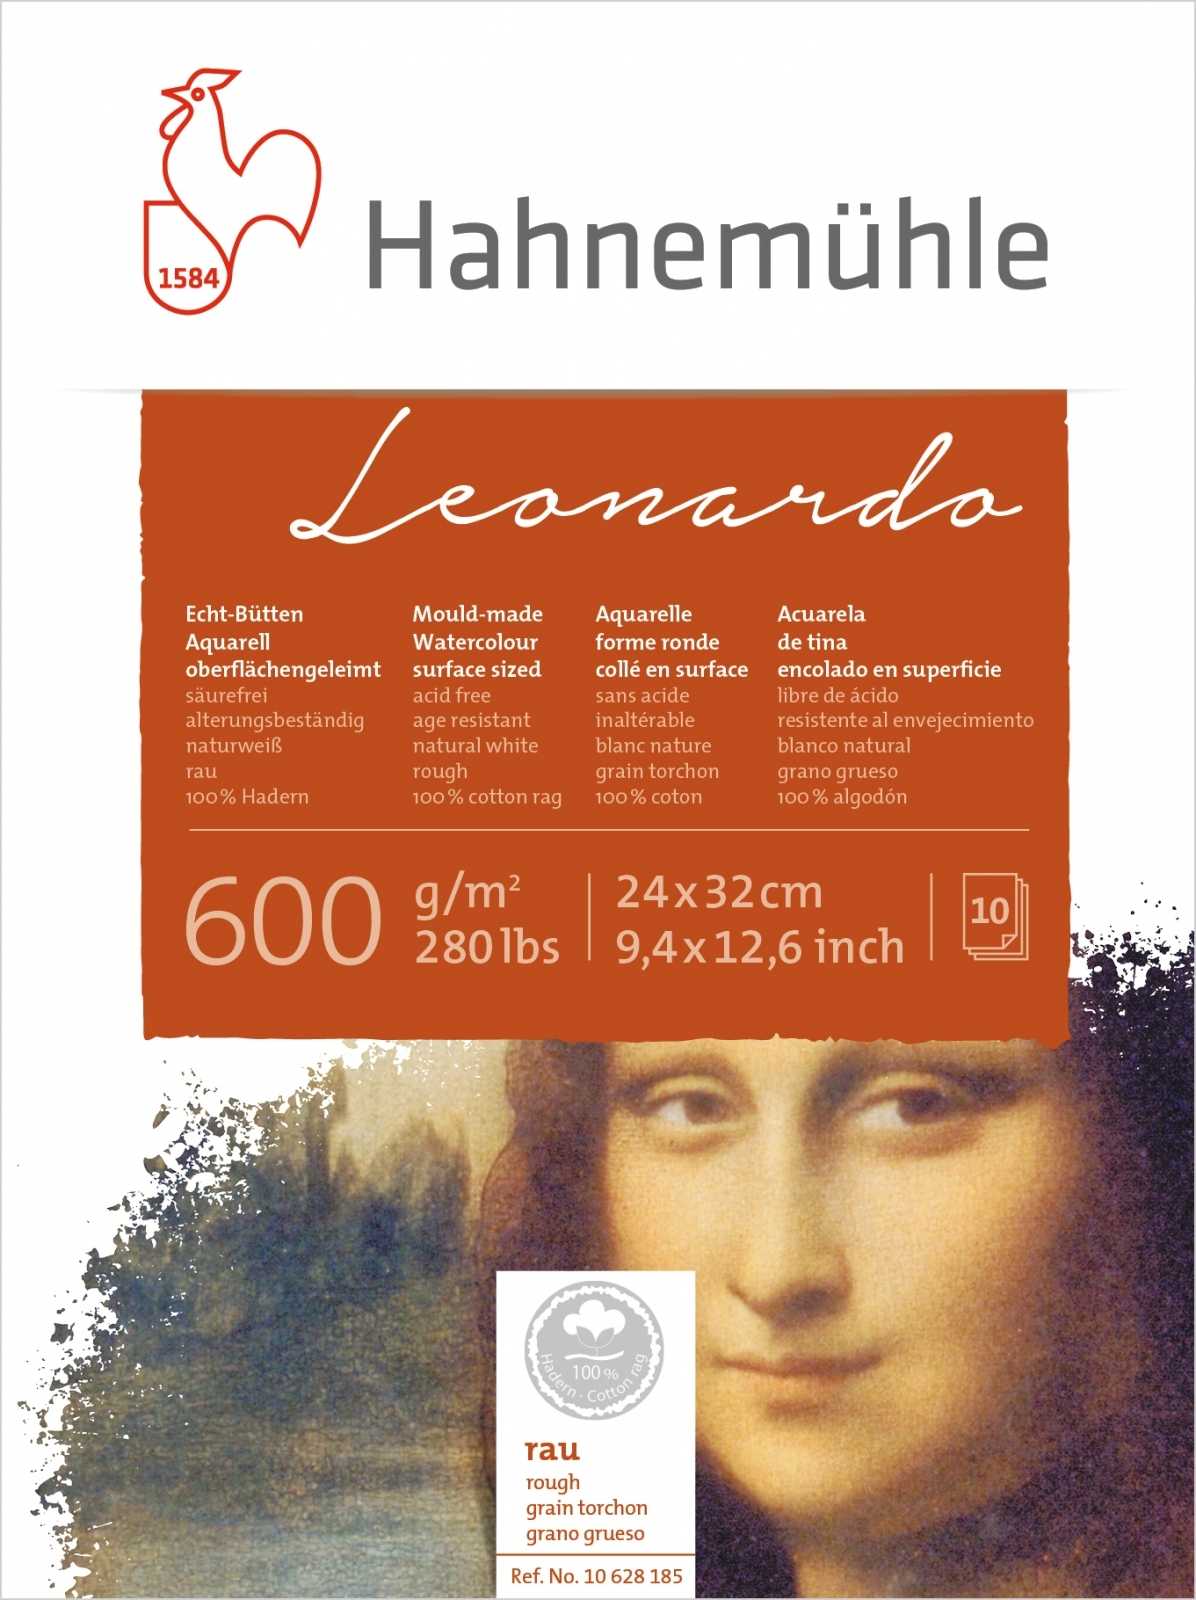 Leonardo Hahnemuhle 600g Rugoso 24x32 10fls